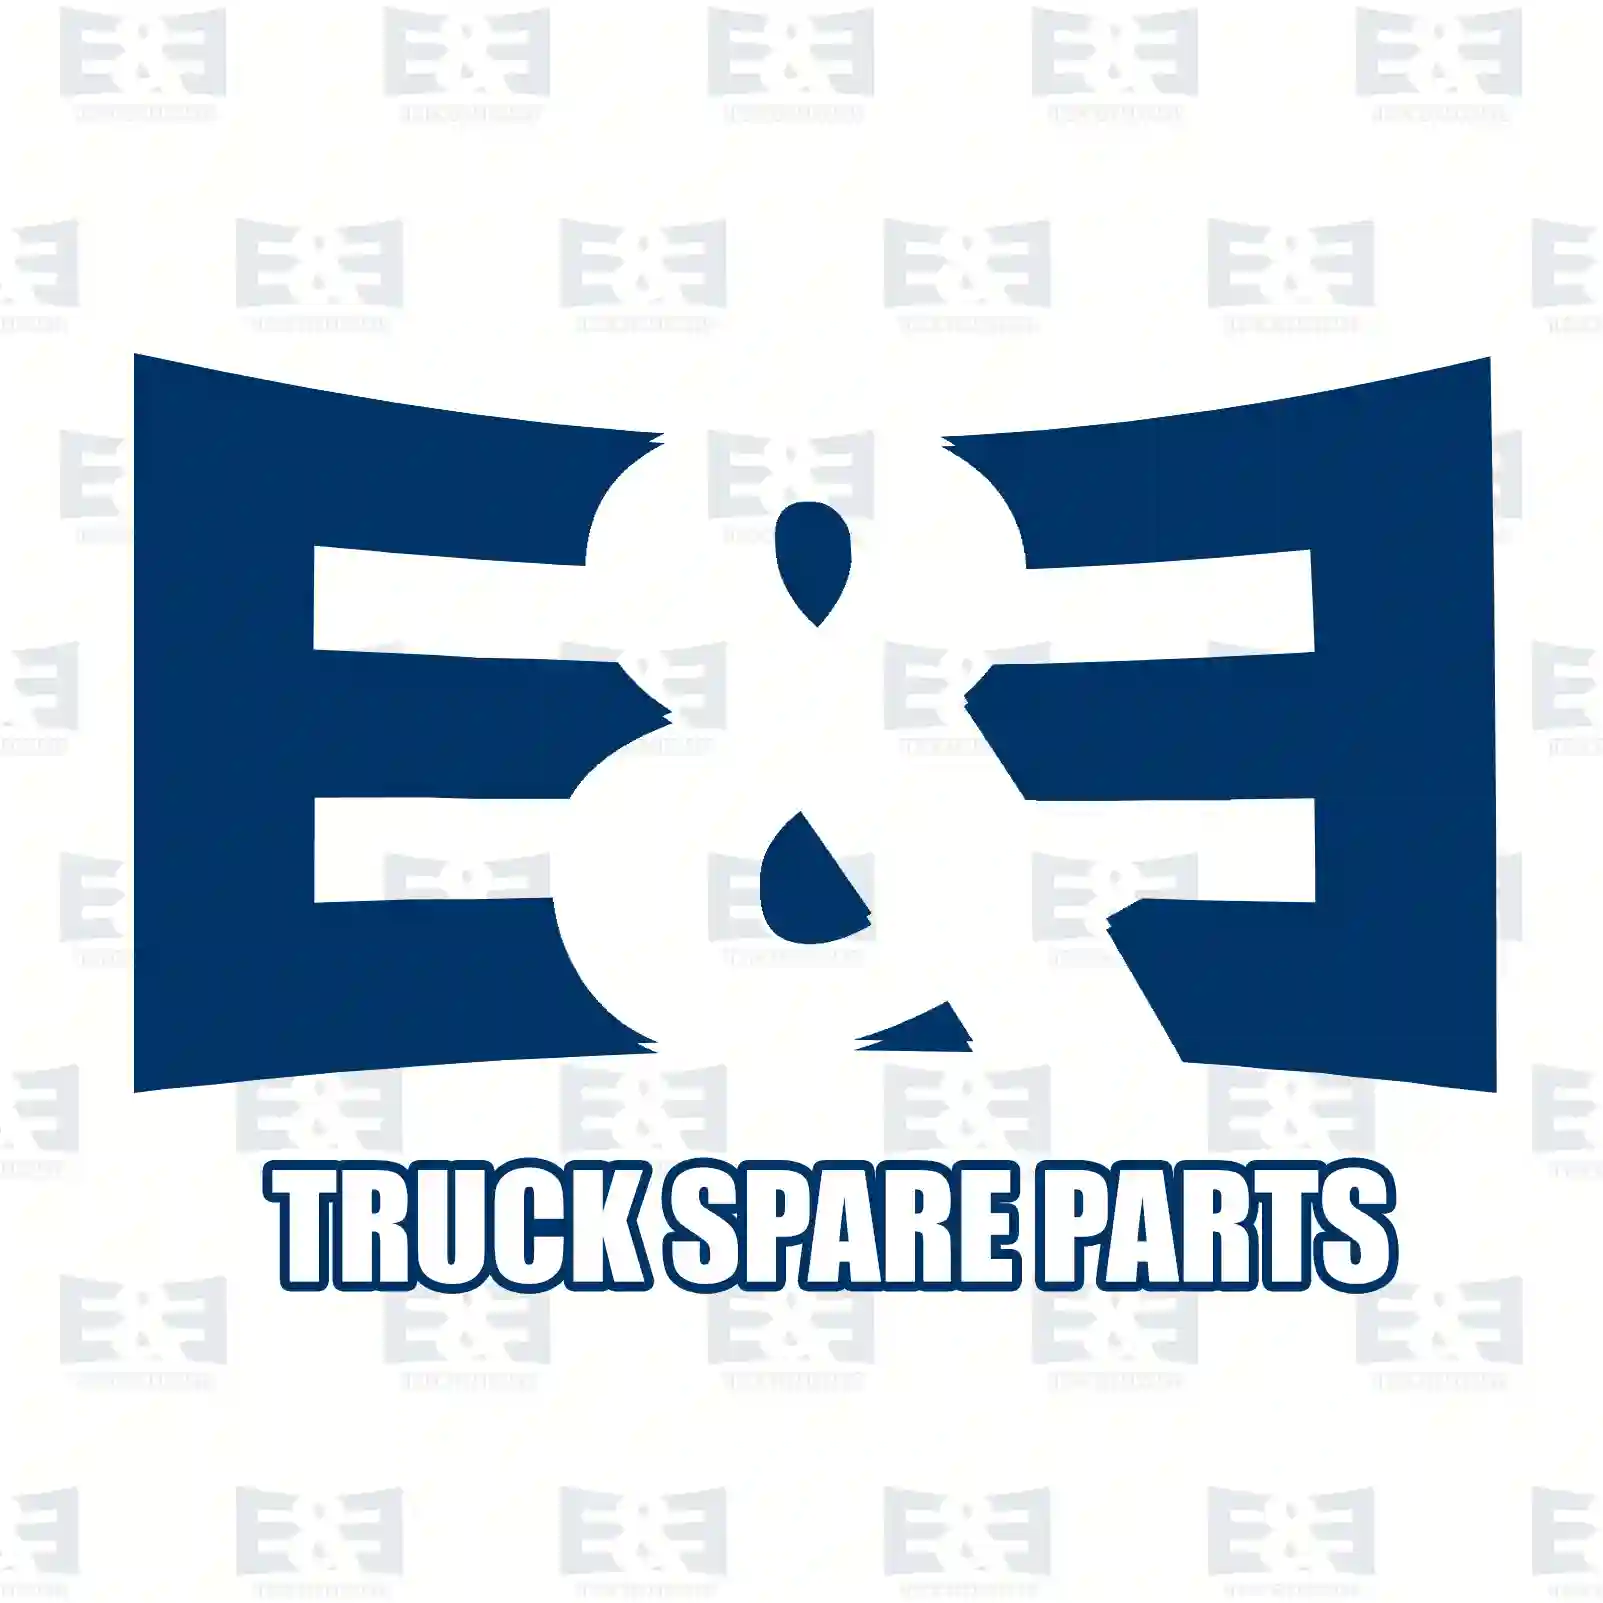 Piston with liner, 2E2208490, 4220300337, 4230300037, 4230300437, 4230300537, 4230301037, 4230301237 ||  2E2208490 E&E Truck Spare Parts | Truck Spare Parts, Auotomotive Spare Parts Piston with liner, 2E2208490, 4220300337, 4230300037, 4230300437, 4230300537, 4230301037, 4230301237 ||  2E2208490 E&E Truck Spare Parts | Truck Spare Parts, Auotomotive Spare Parts